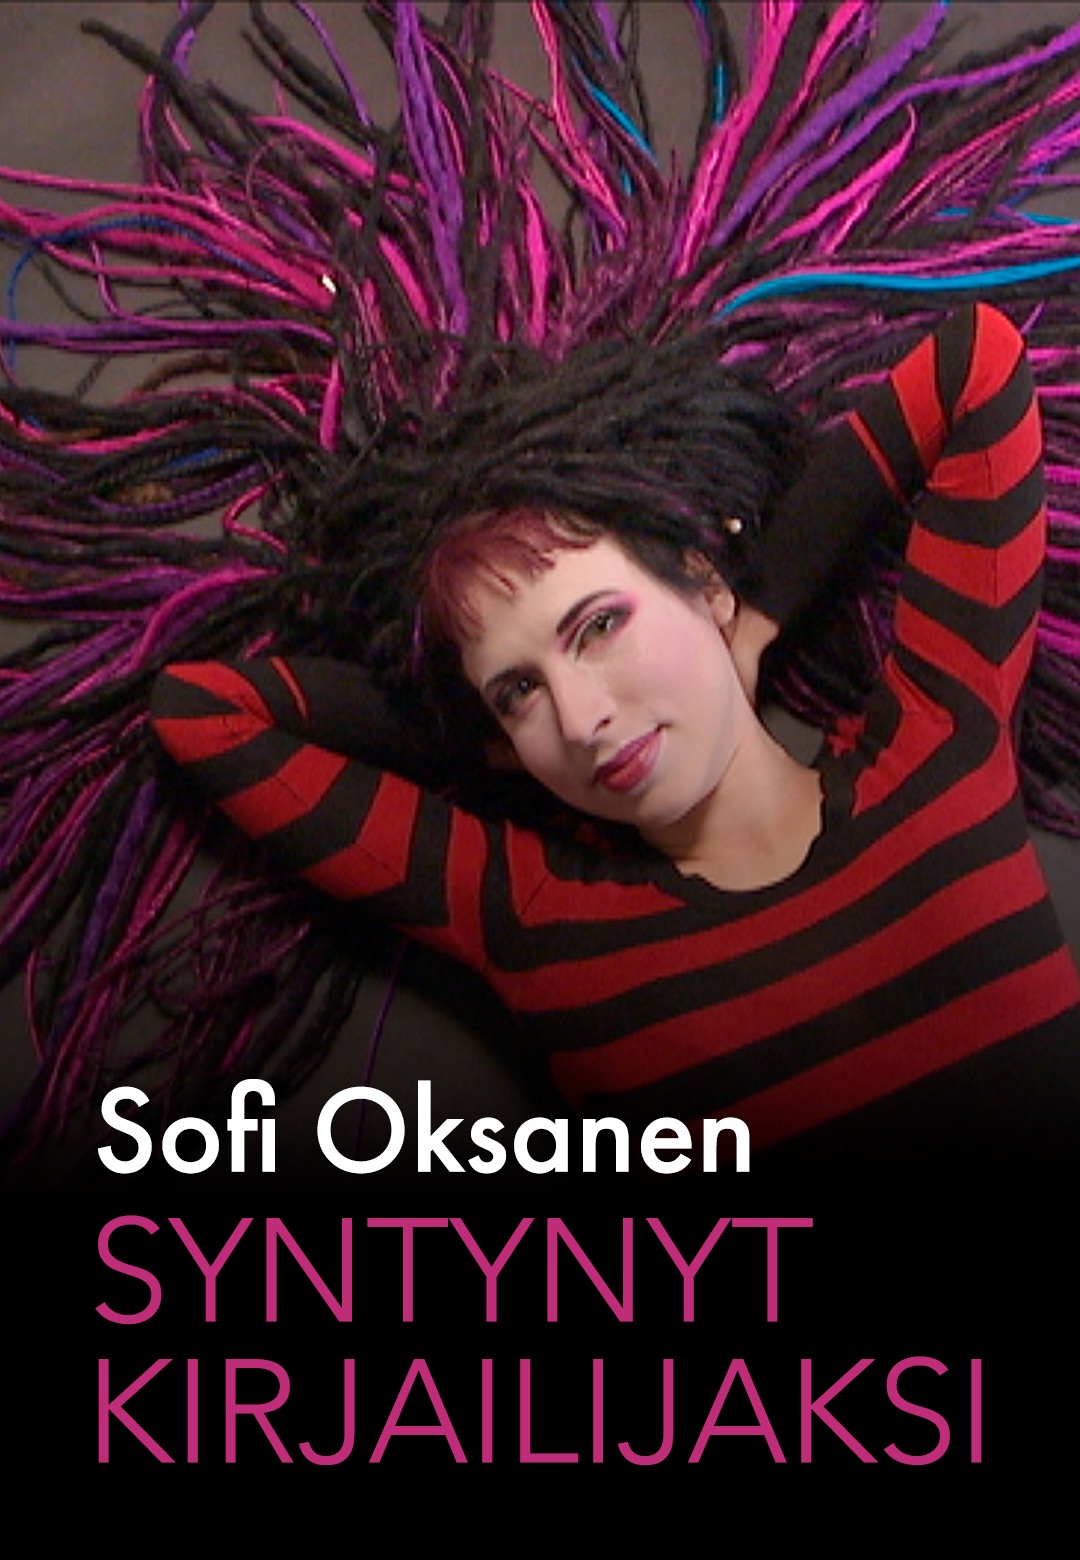 Sofi Oksanen. Syntynyt kirjailijaksi